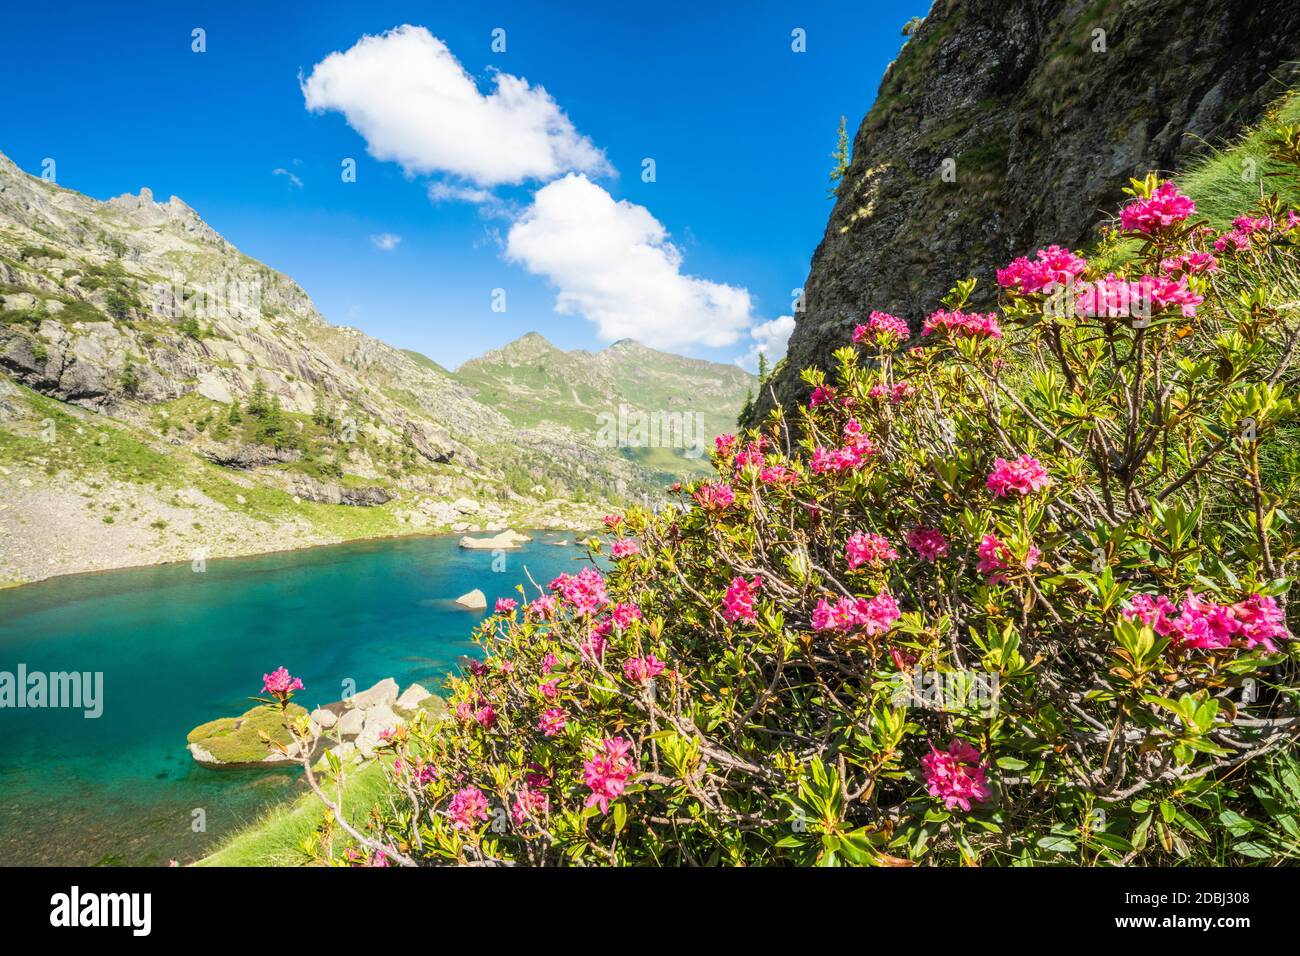 Rhododendrons en fleurs sur les rives du lac alpin Zancone, Alpes Orobie, Valgerola, Valtellina, Lombardie, Italie, Europe Banque D'Images